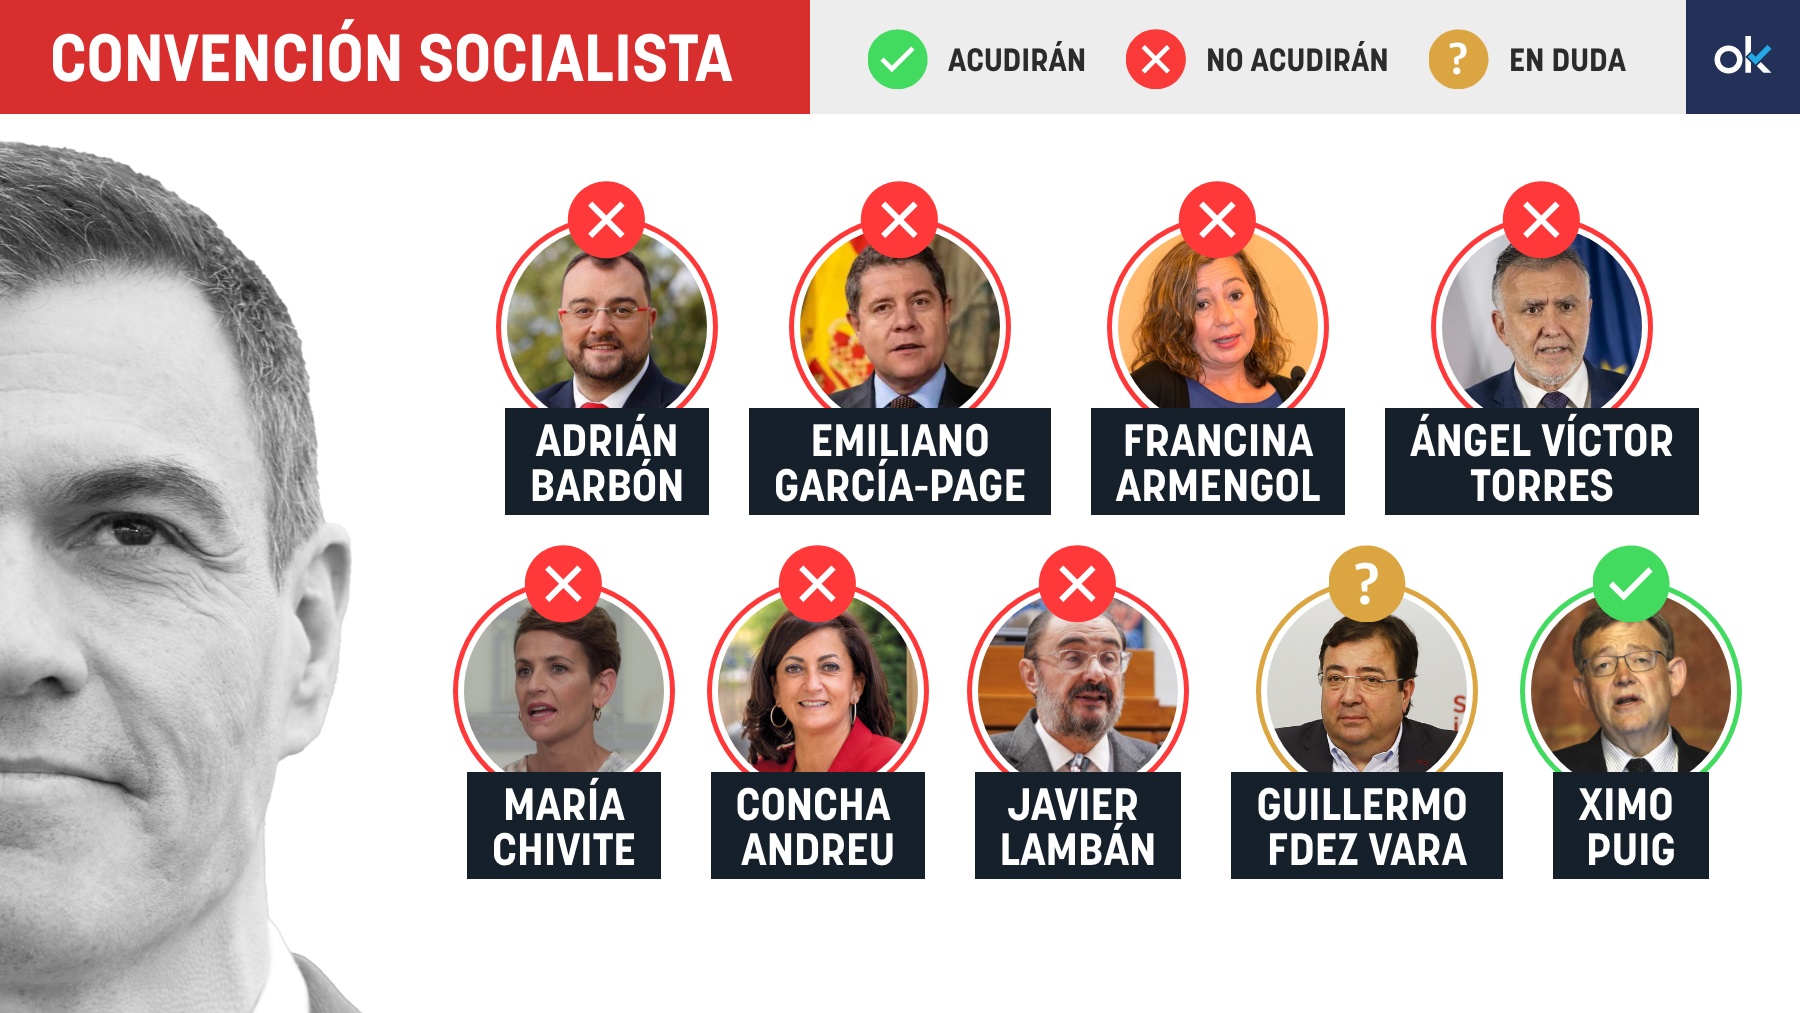 Los barones socialistas según si acudirán o no al acto de Valencia. Montaje: OKDIARIO